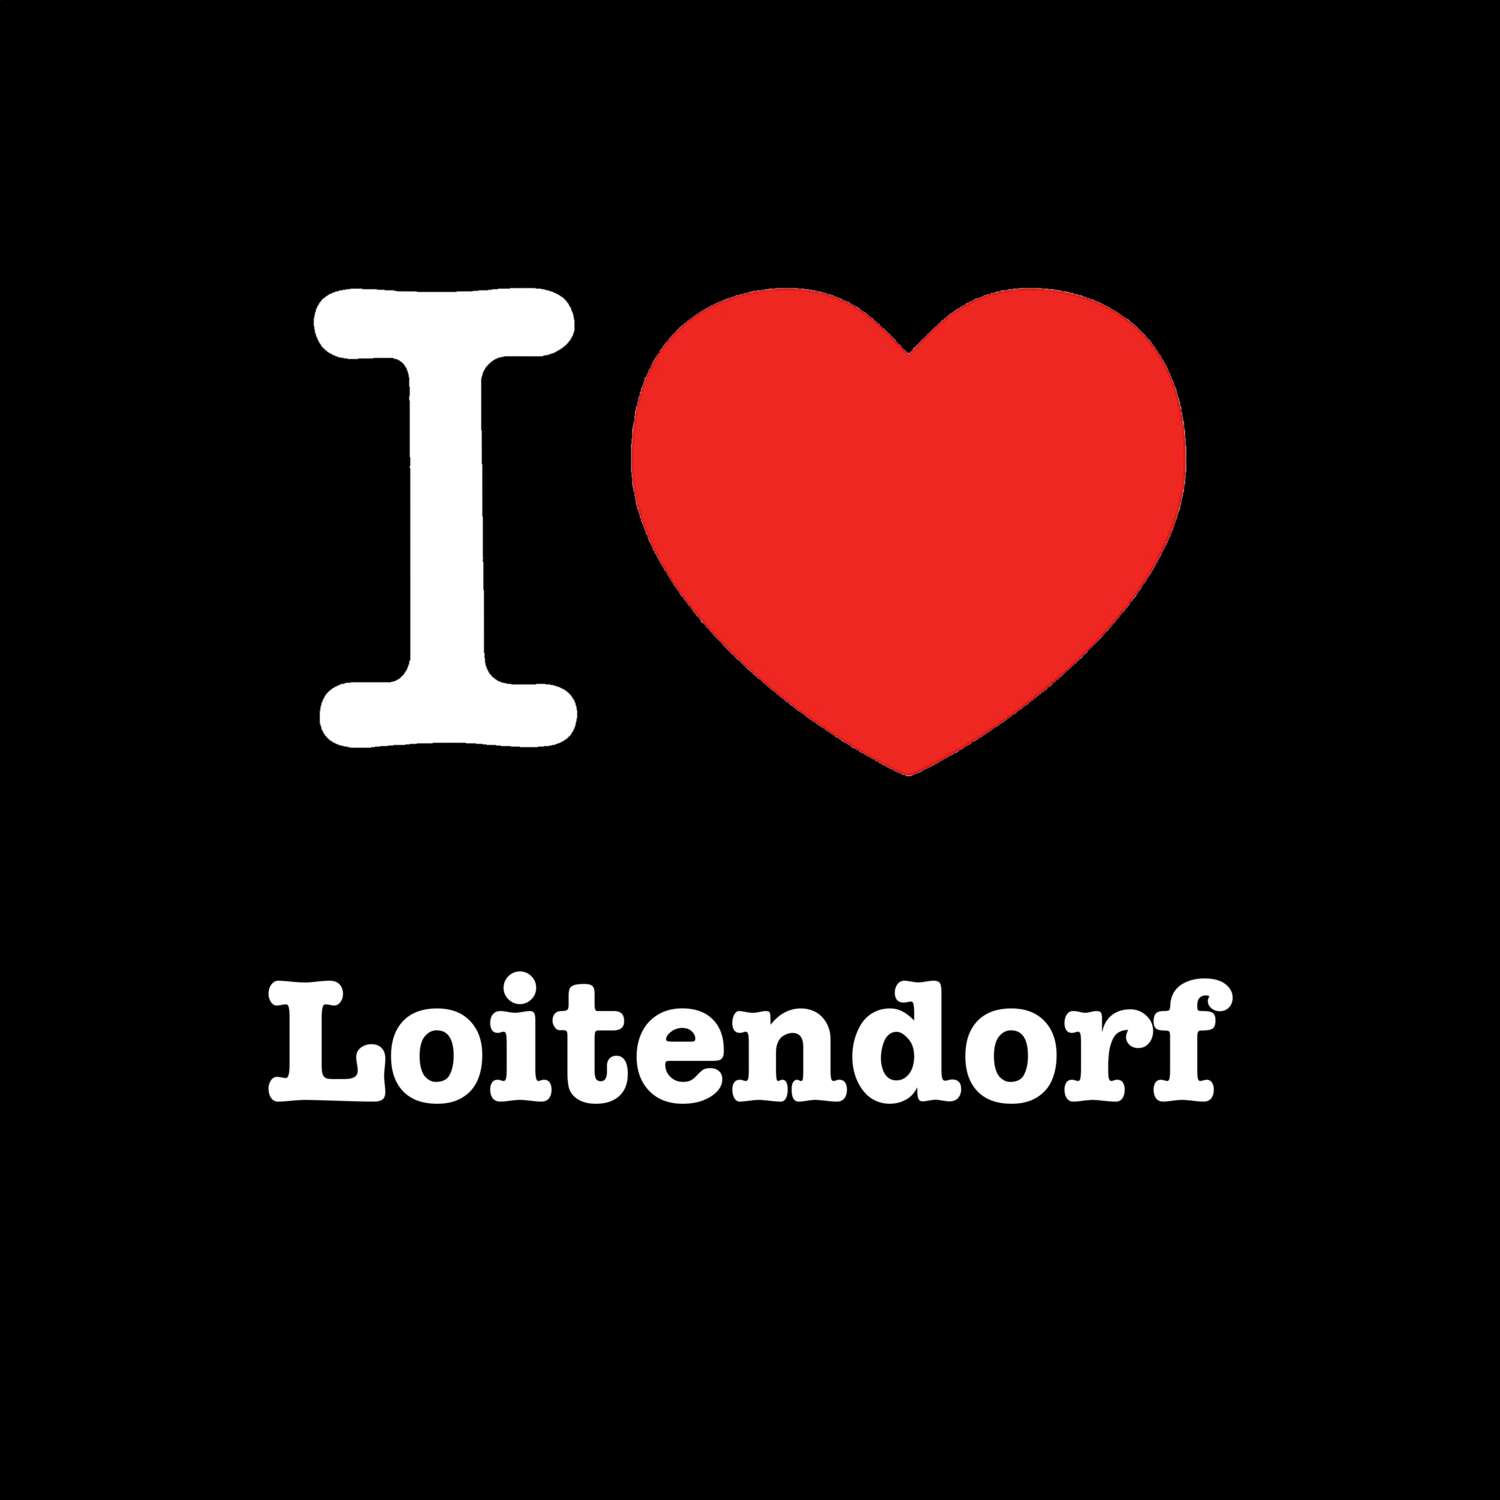 Loitendorf T-Shirt »I love«